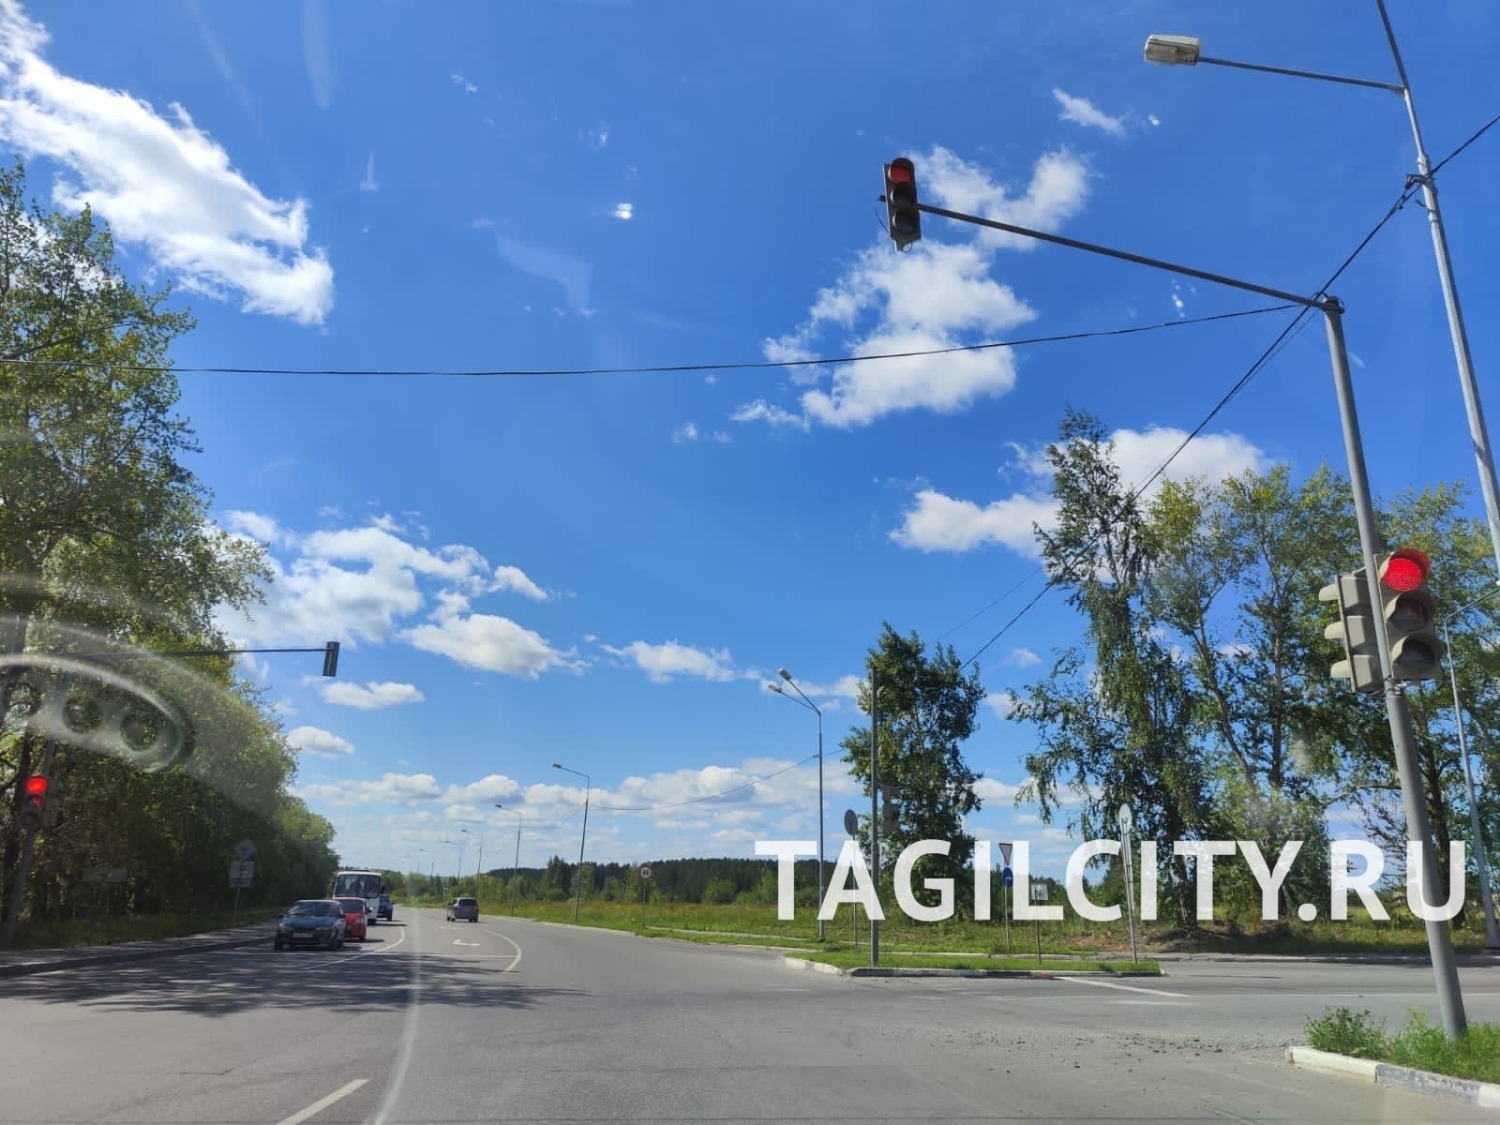 Светофор на перекрестке улиц Алтайская и Боровая